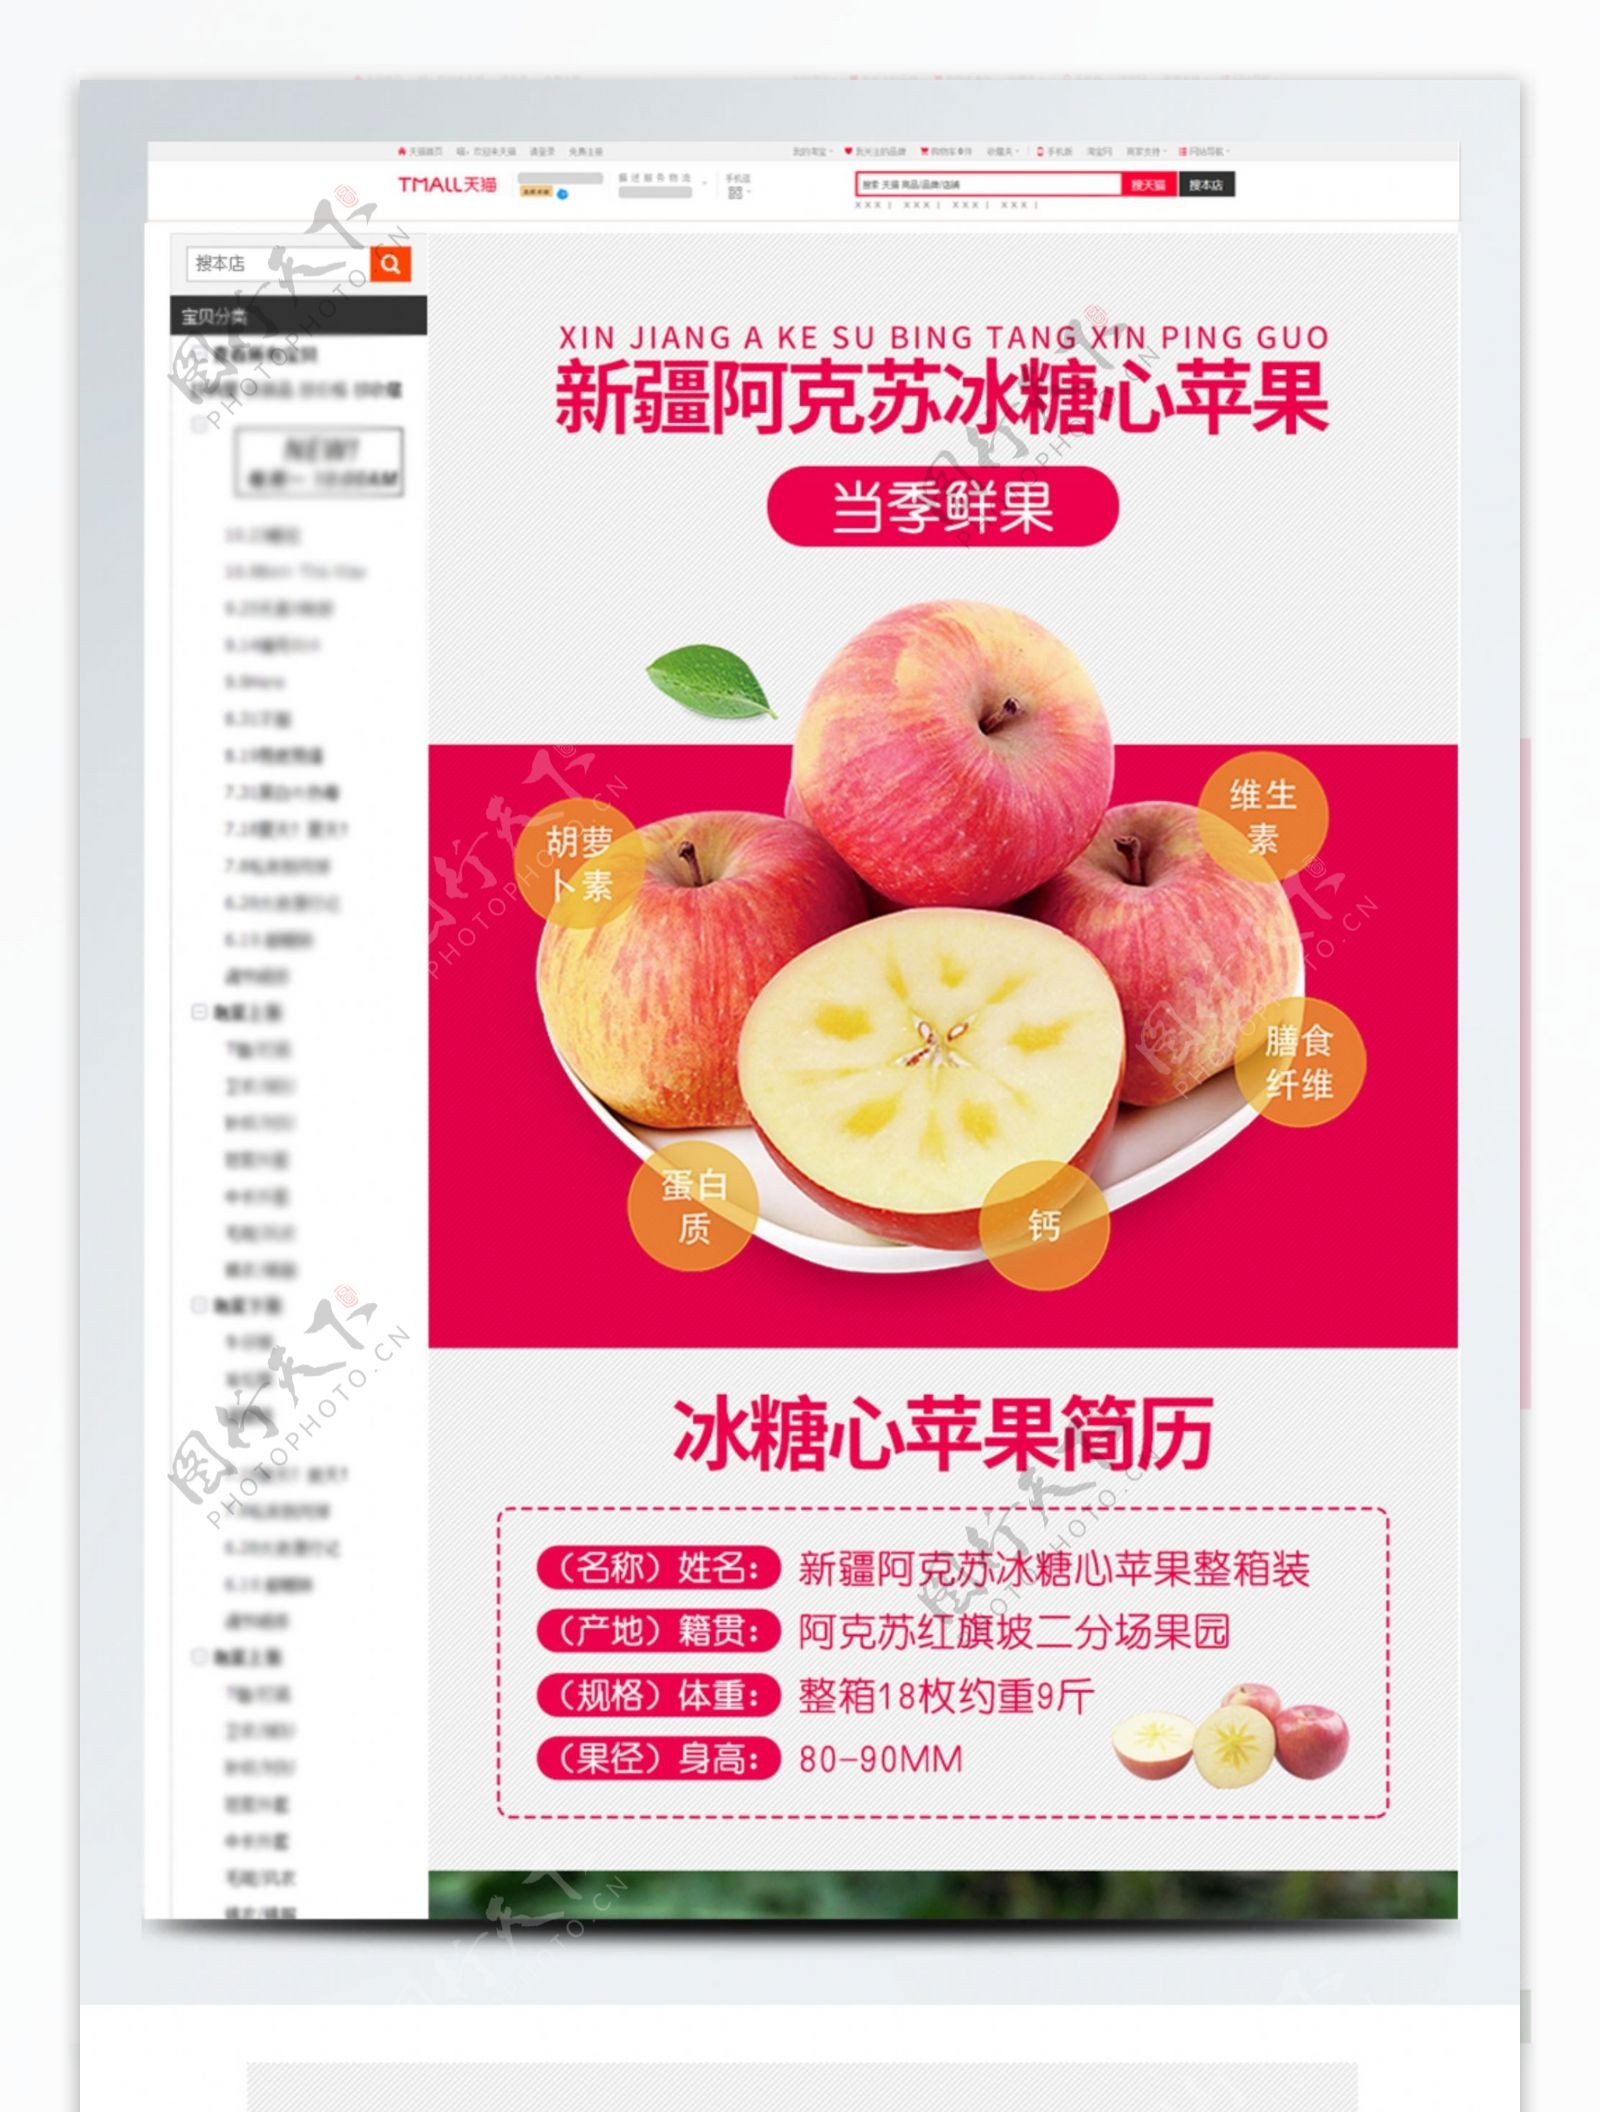 电商淘宝食品水果新疆阿克苏新鲜苹果详情页